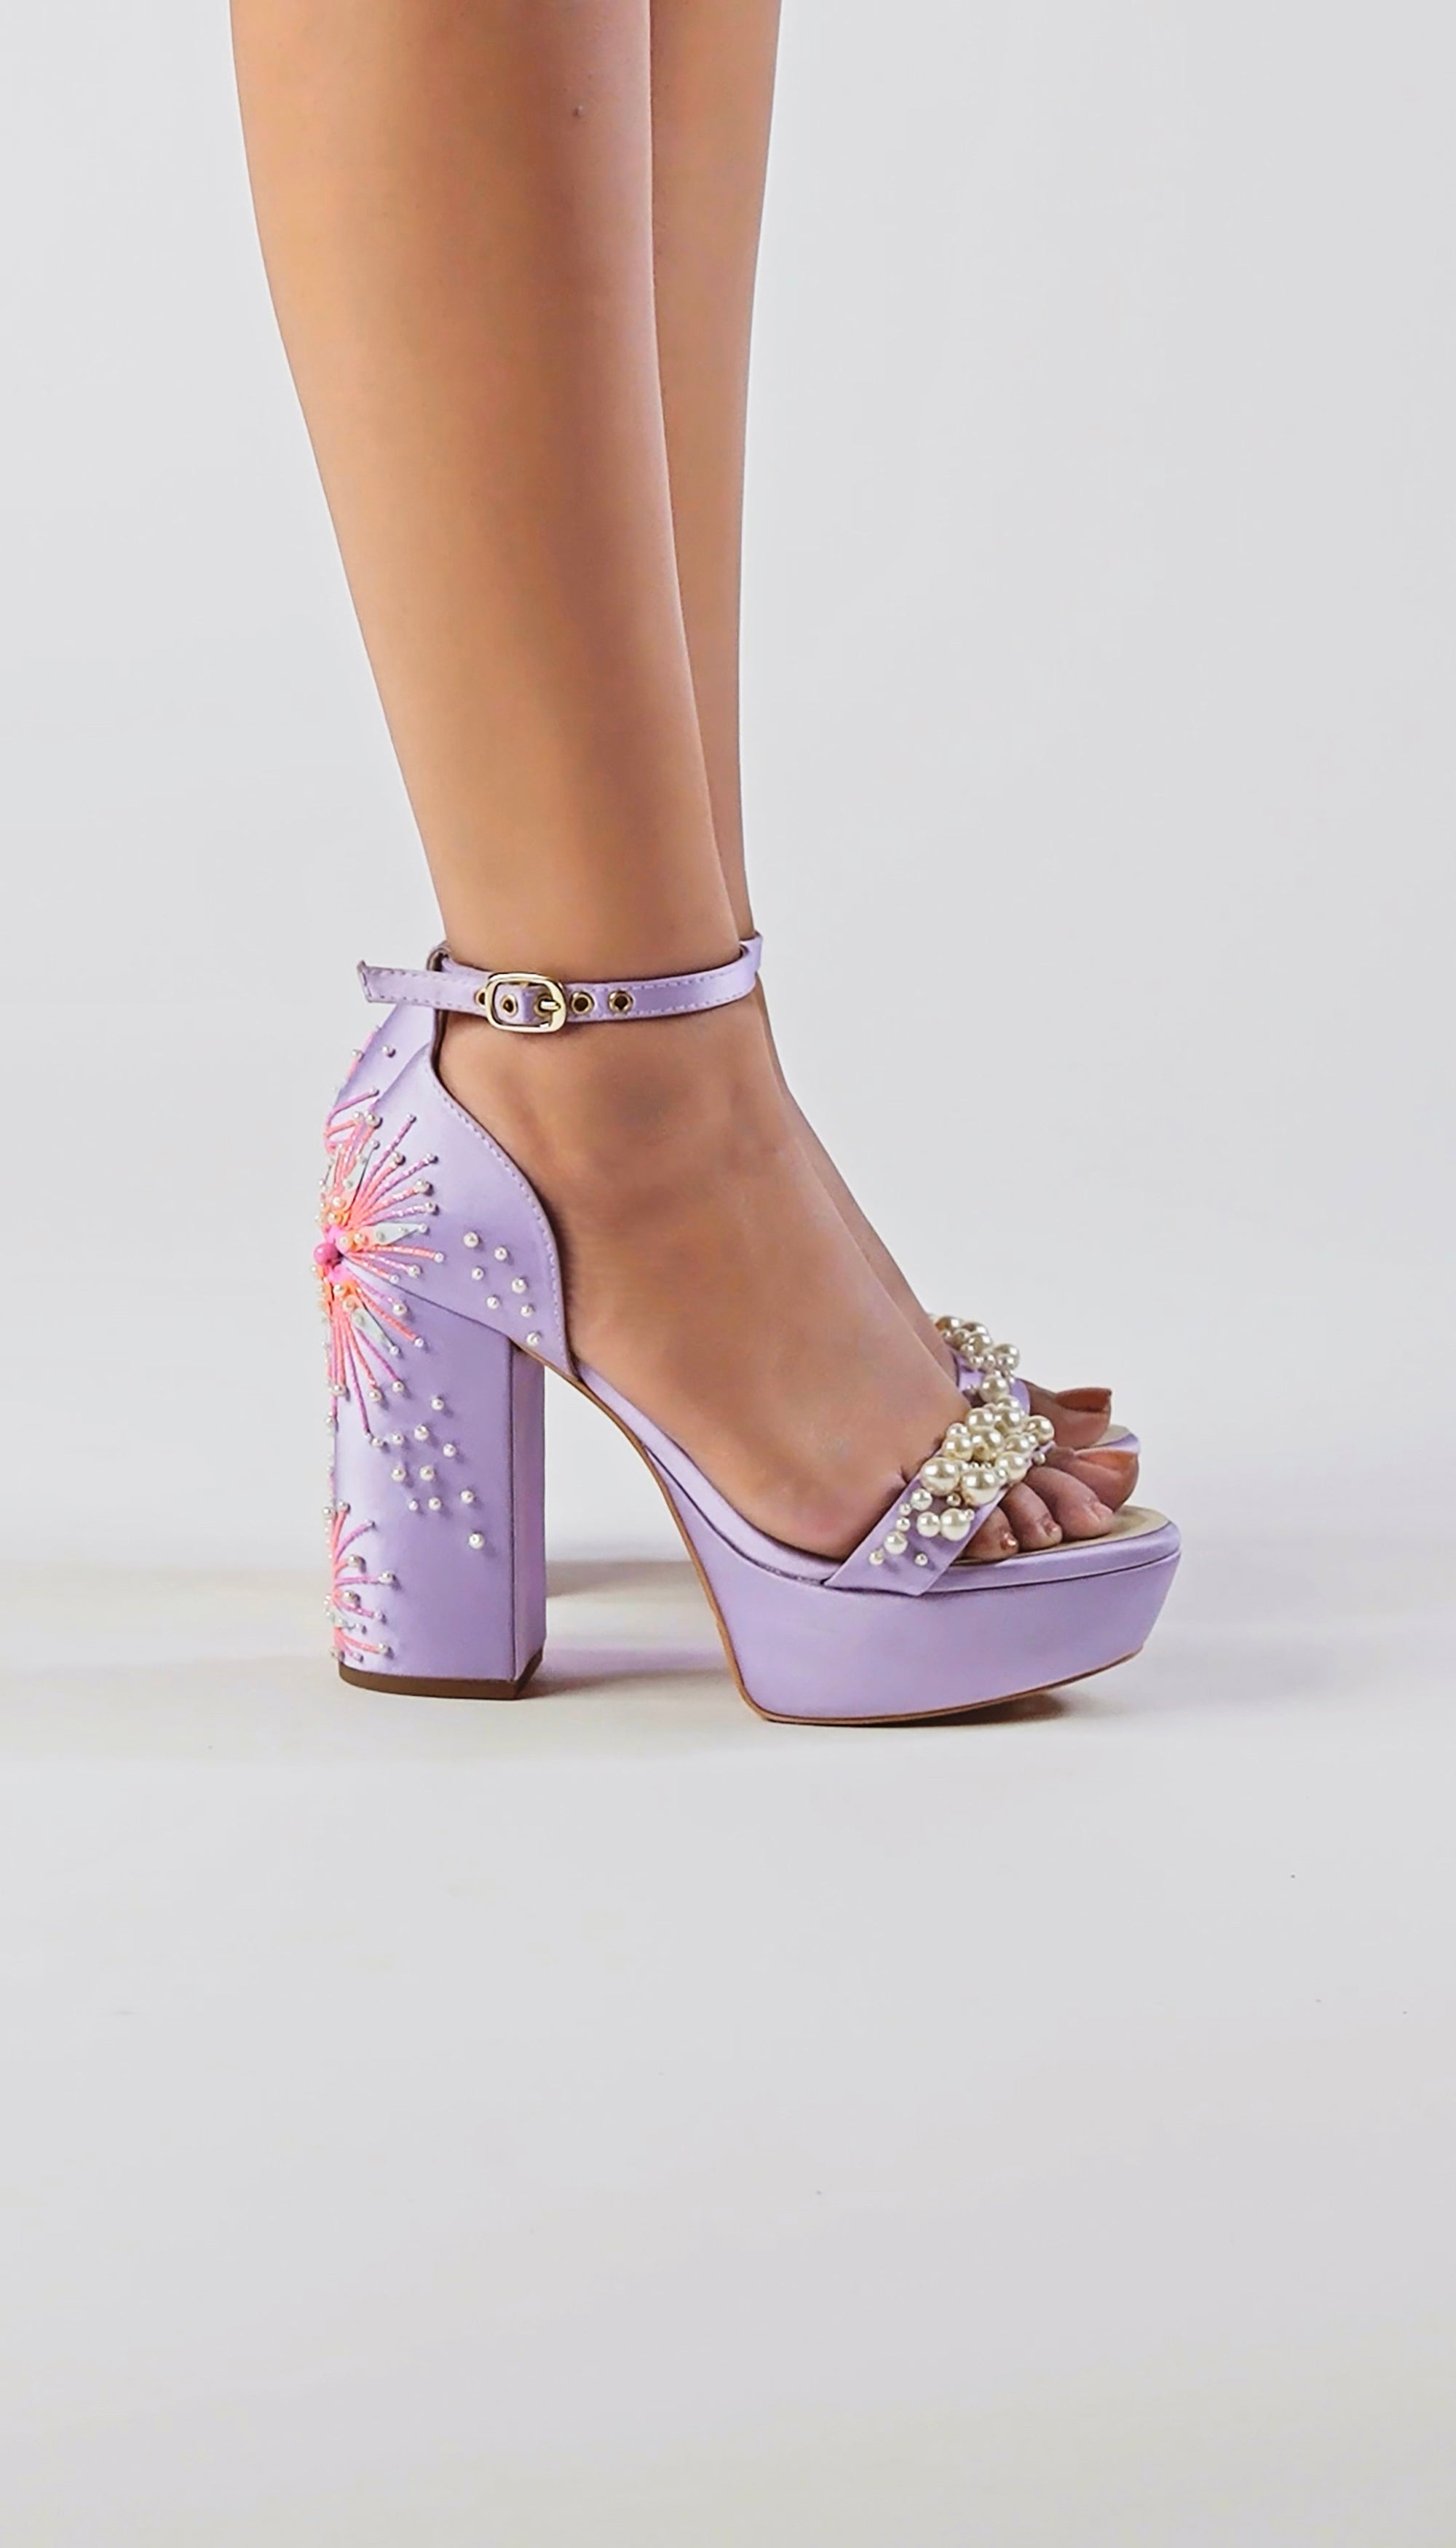 RAID Aasma platform heeled sandals in lilac patent | ASOS